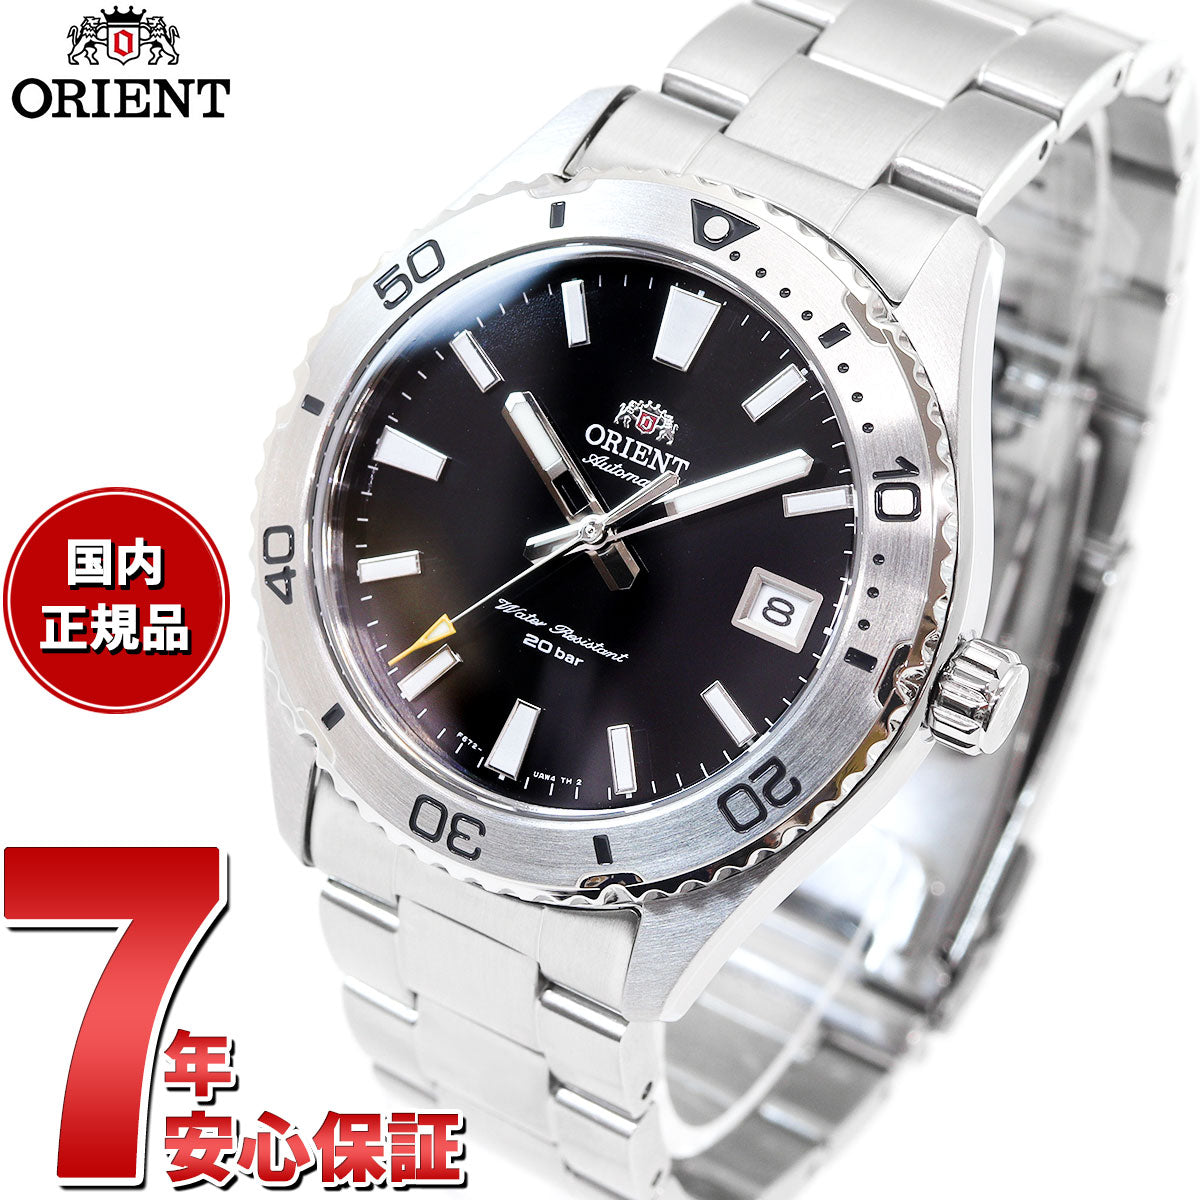 9,660円Orient new mako 39mm